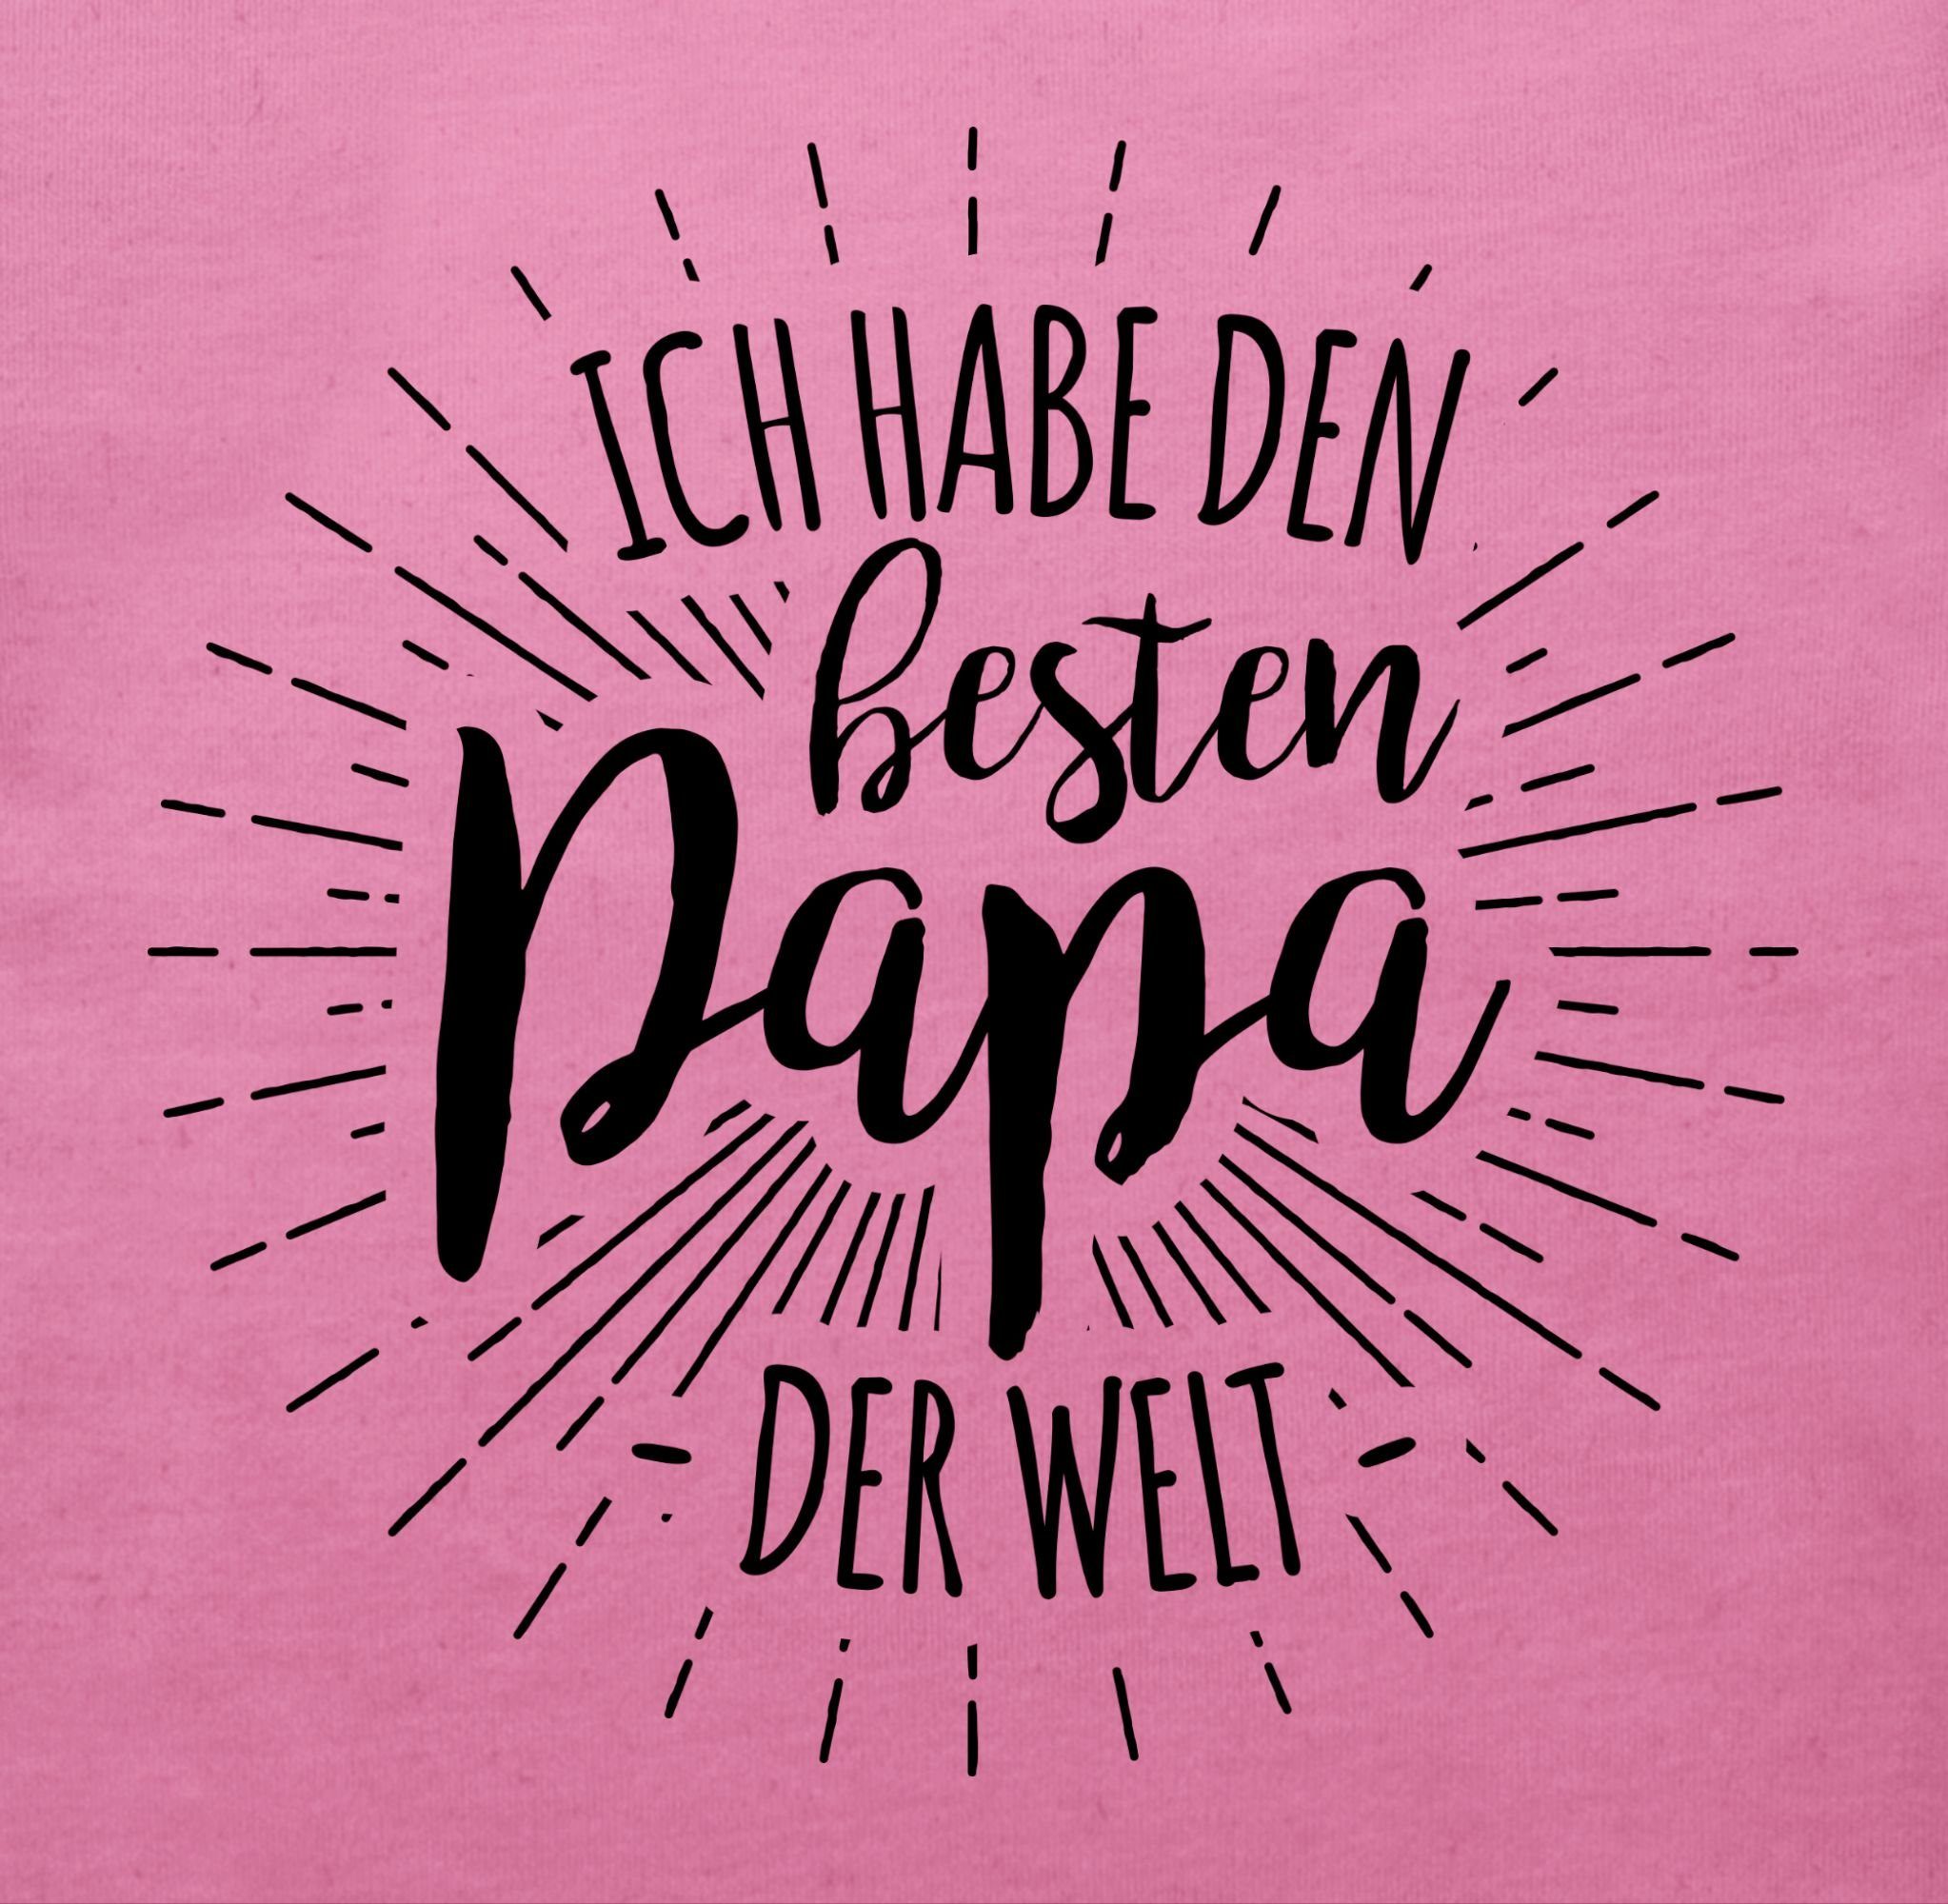 Shirtracer T-Shirt Ich habe den Pink Vatertag besten Baby Geschenk 3 Welt der Papa